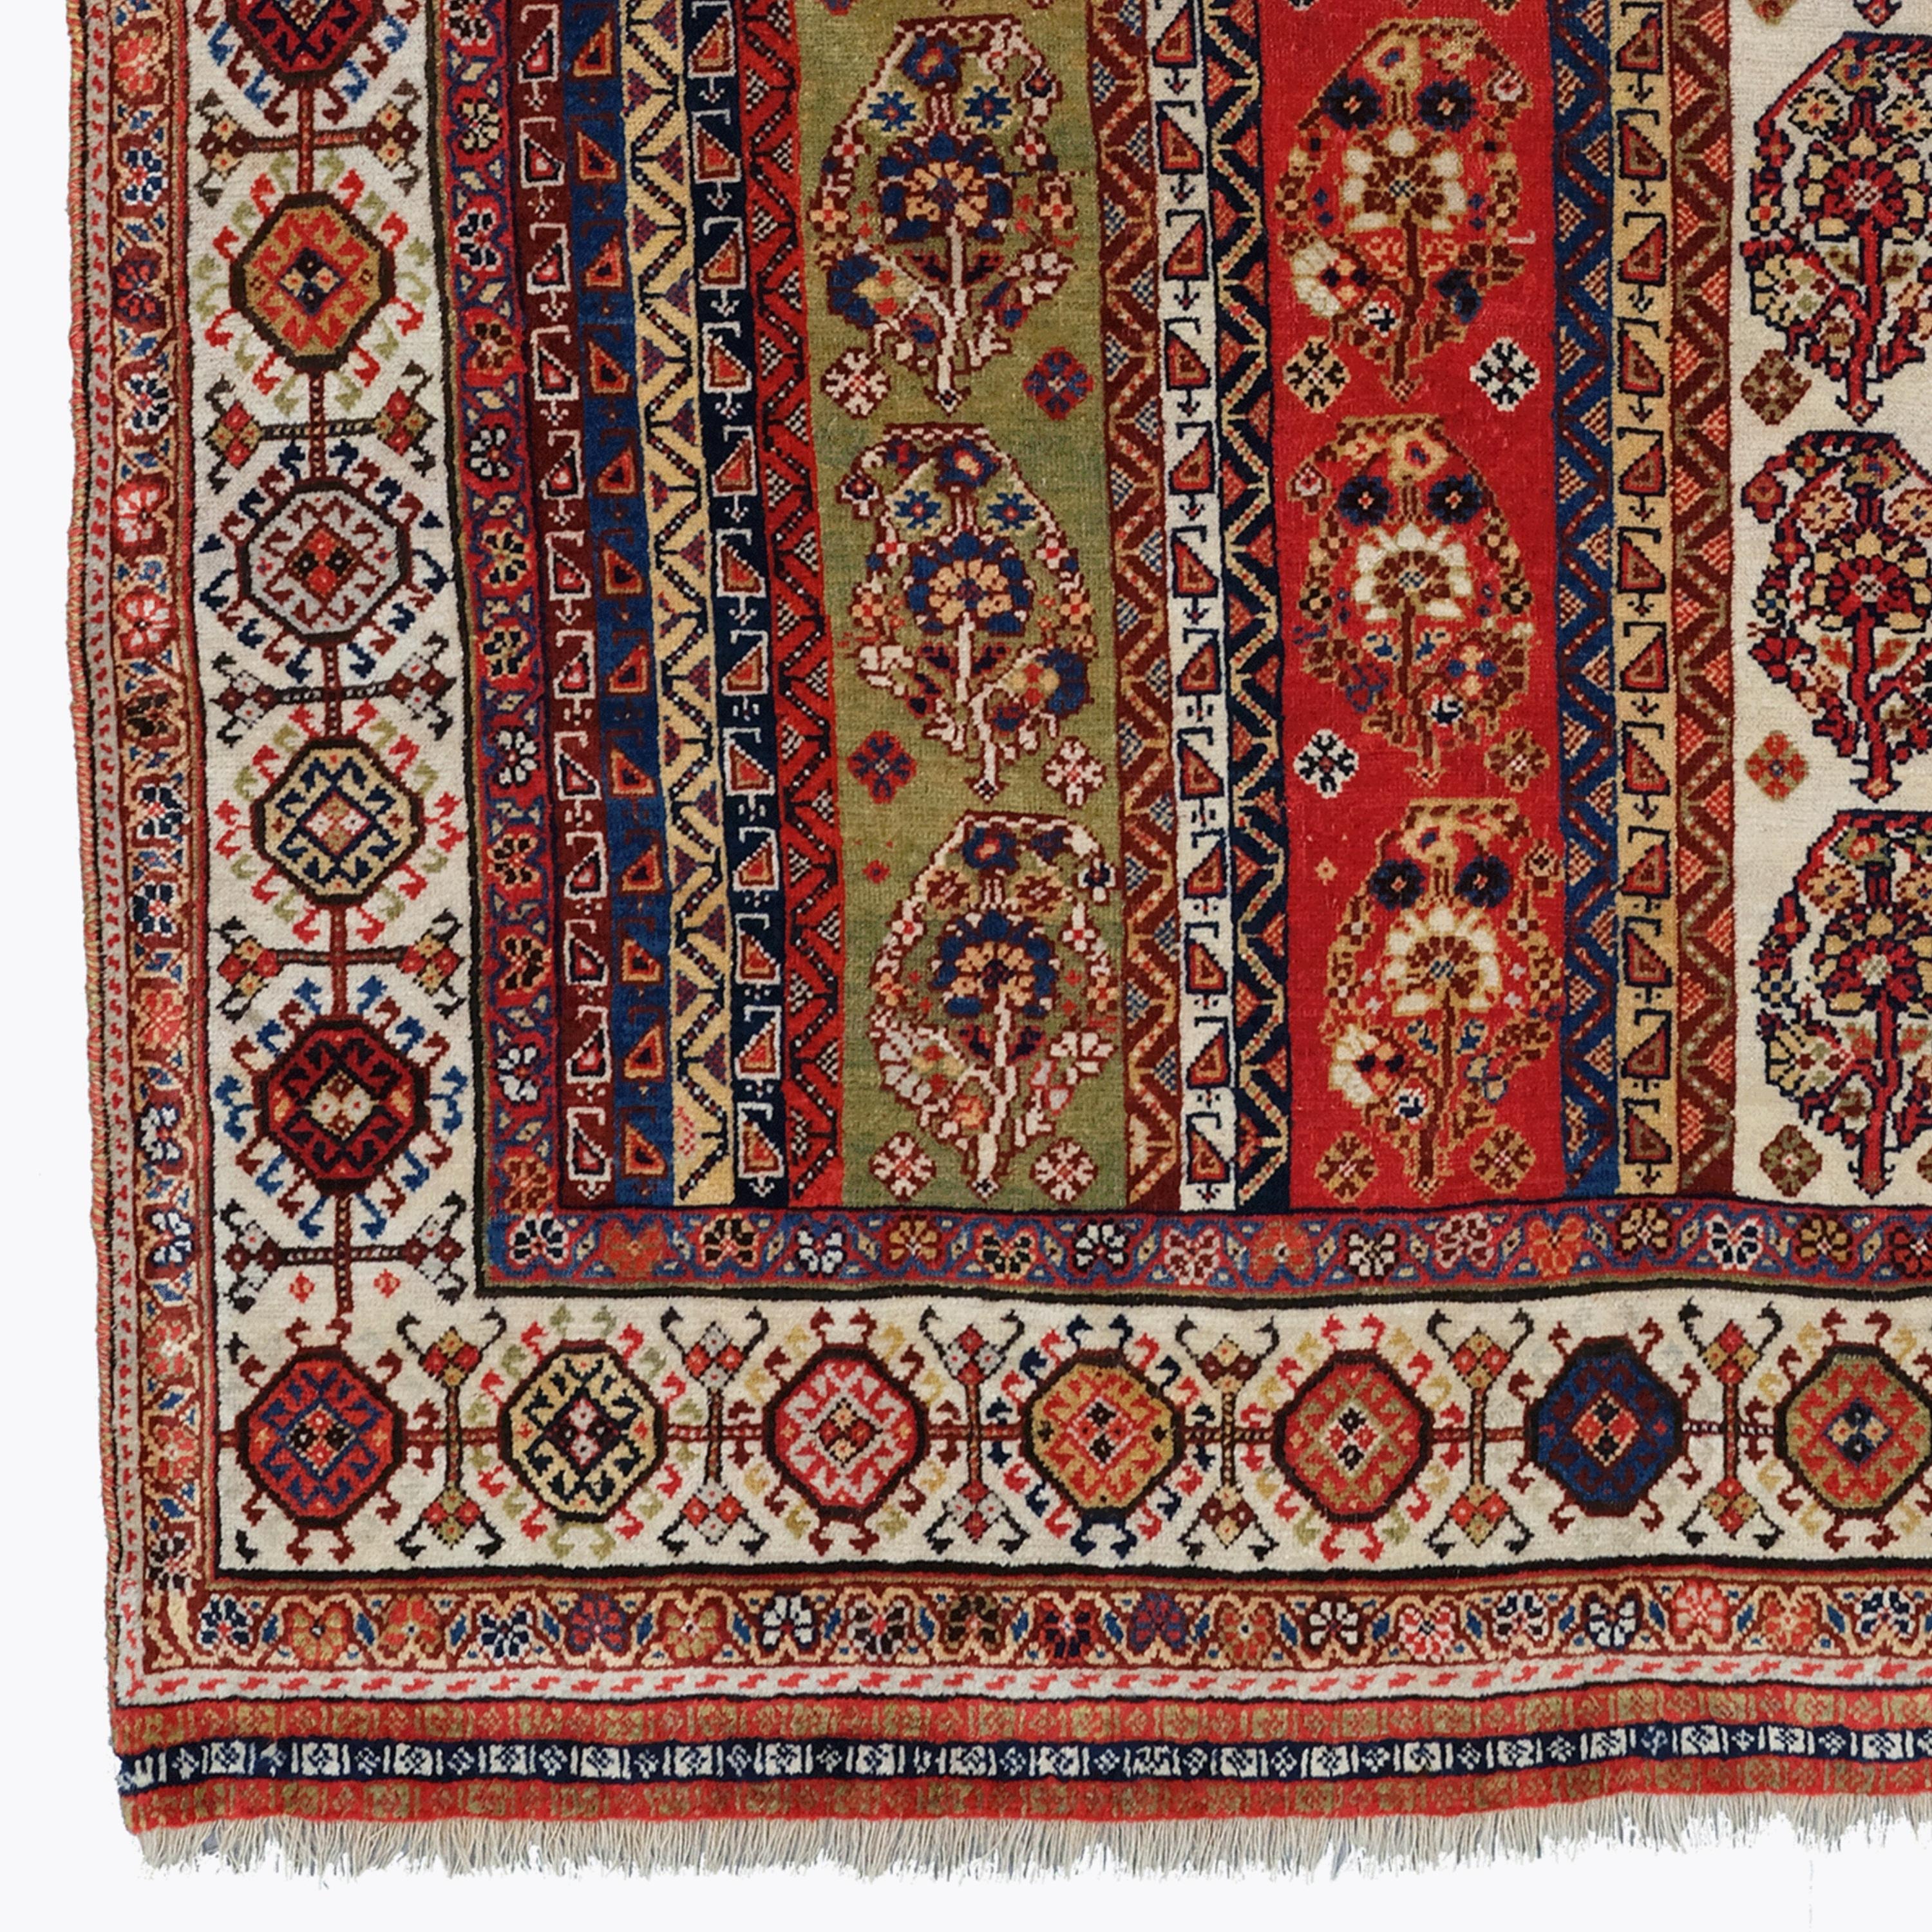 Tapis ancien Shekarlu Qashqai à rayures rares
Taille : 127×175 cm

Ce tapis présente un motif très inhabituel de rayures verticales contenant un petit motif boteh. La palette de couleurs est exceptionnelle, avec des jaunes, des bleus, des rouges et